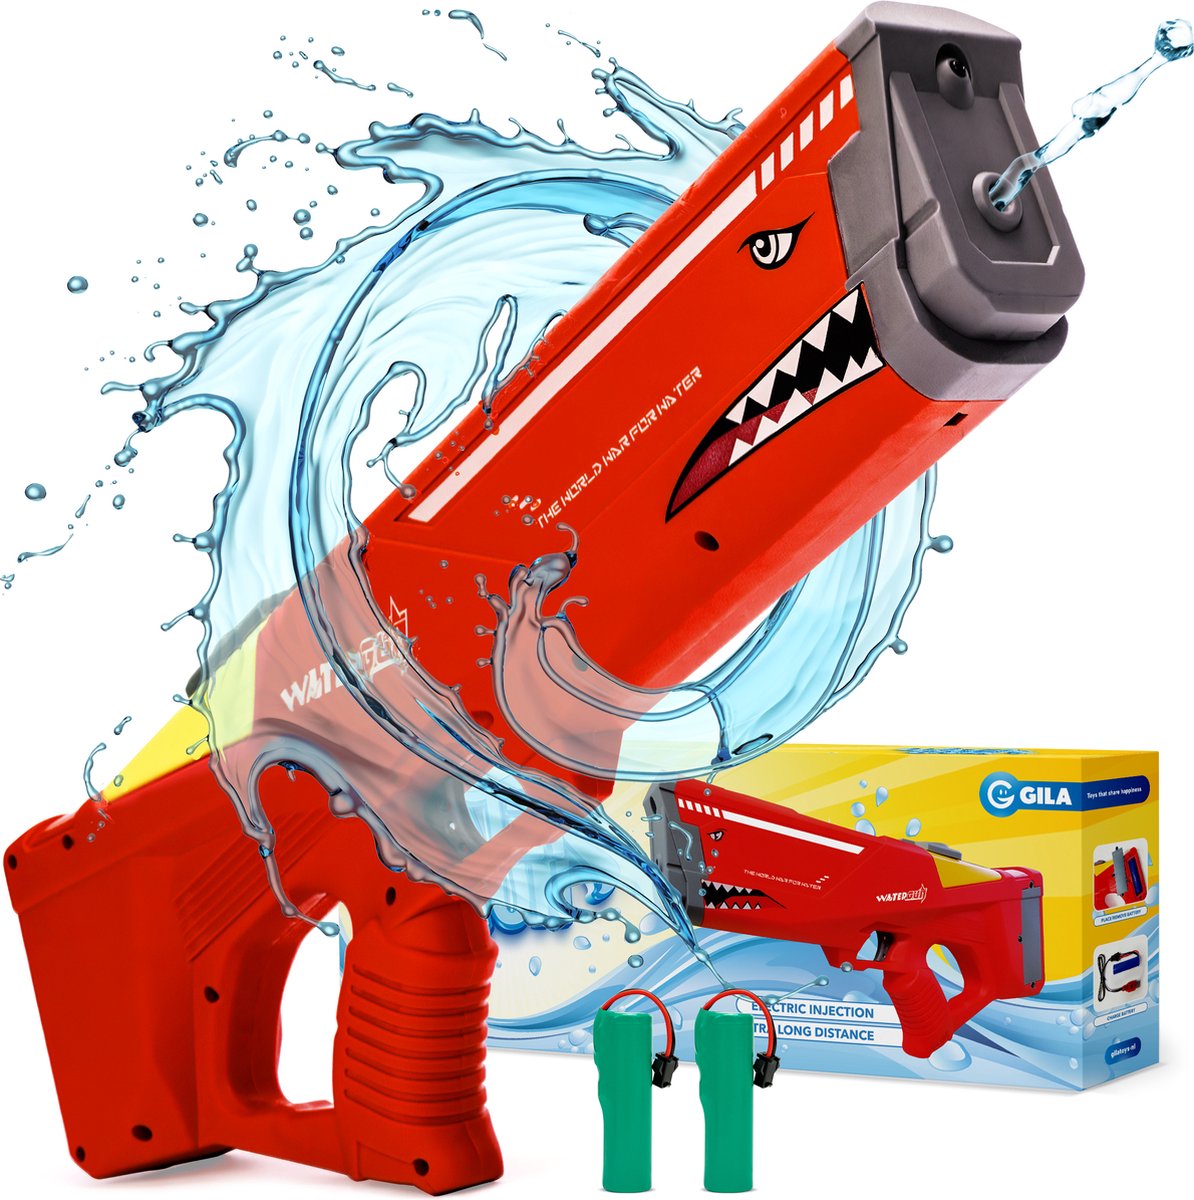 GILA Waterpistool - Automatisch vullen - 2 accu's - Buitenspeelgoed - Elektrisch waterpistool - Rood